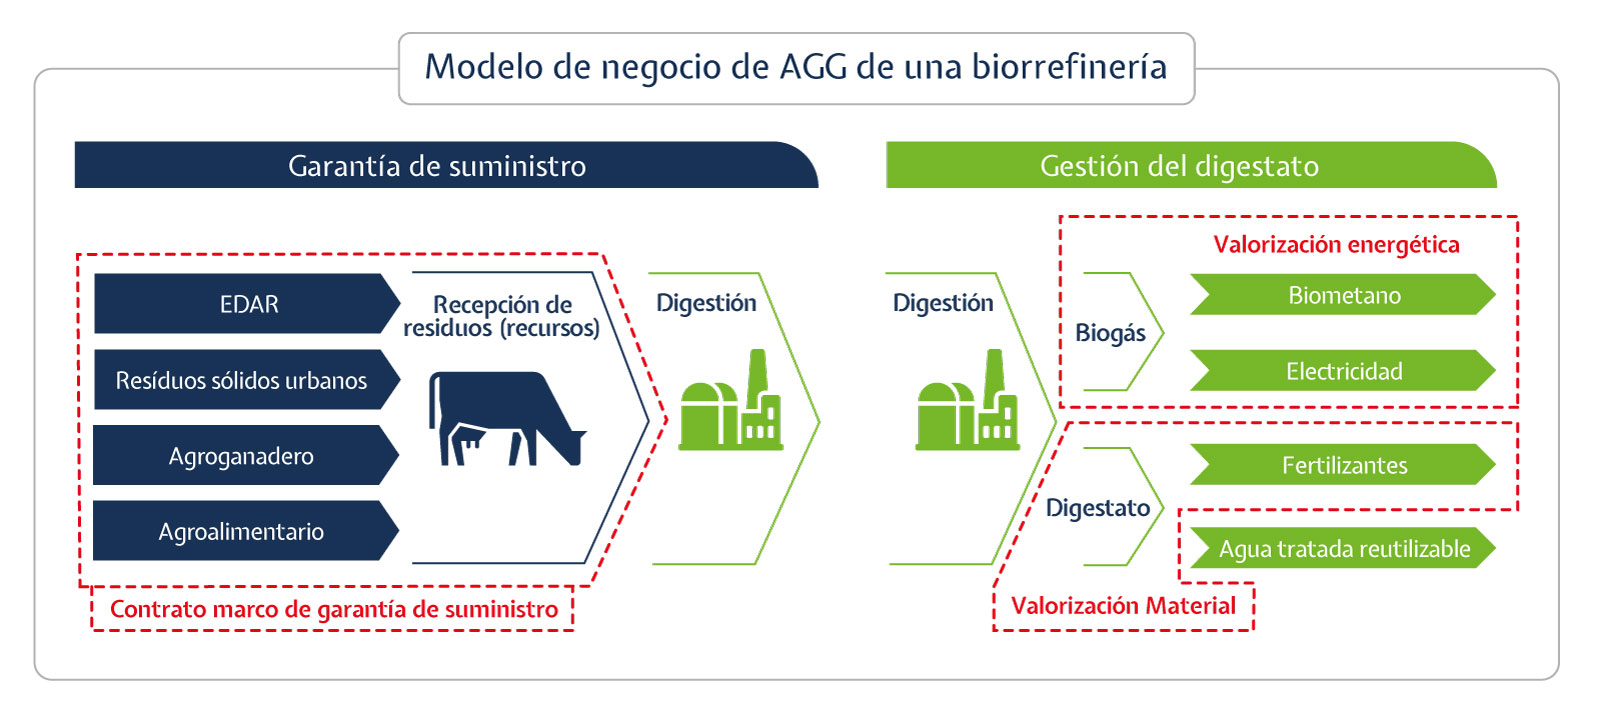 Modelo de negocio AGG de una Biorrefinería